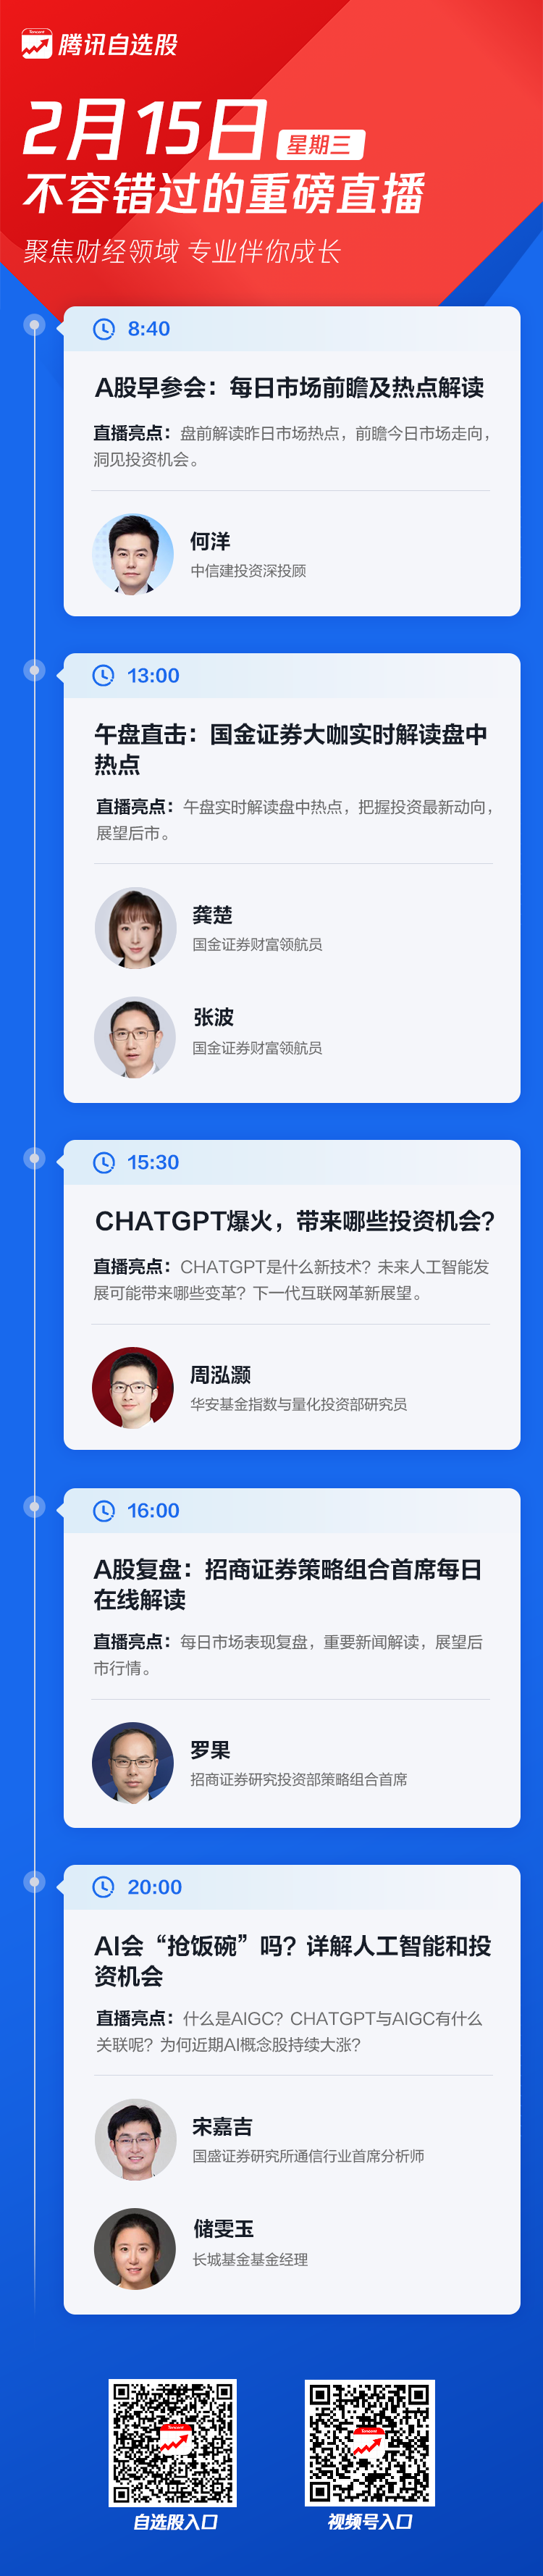 腾讯自选股财经直播预告|ChatGPT来了 人工智能产业增长迎新机遇?w1.jpg